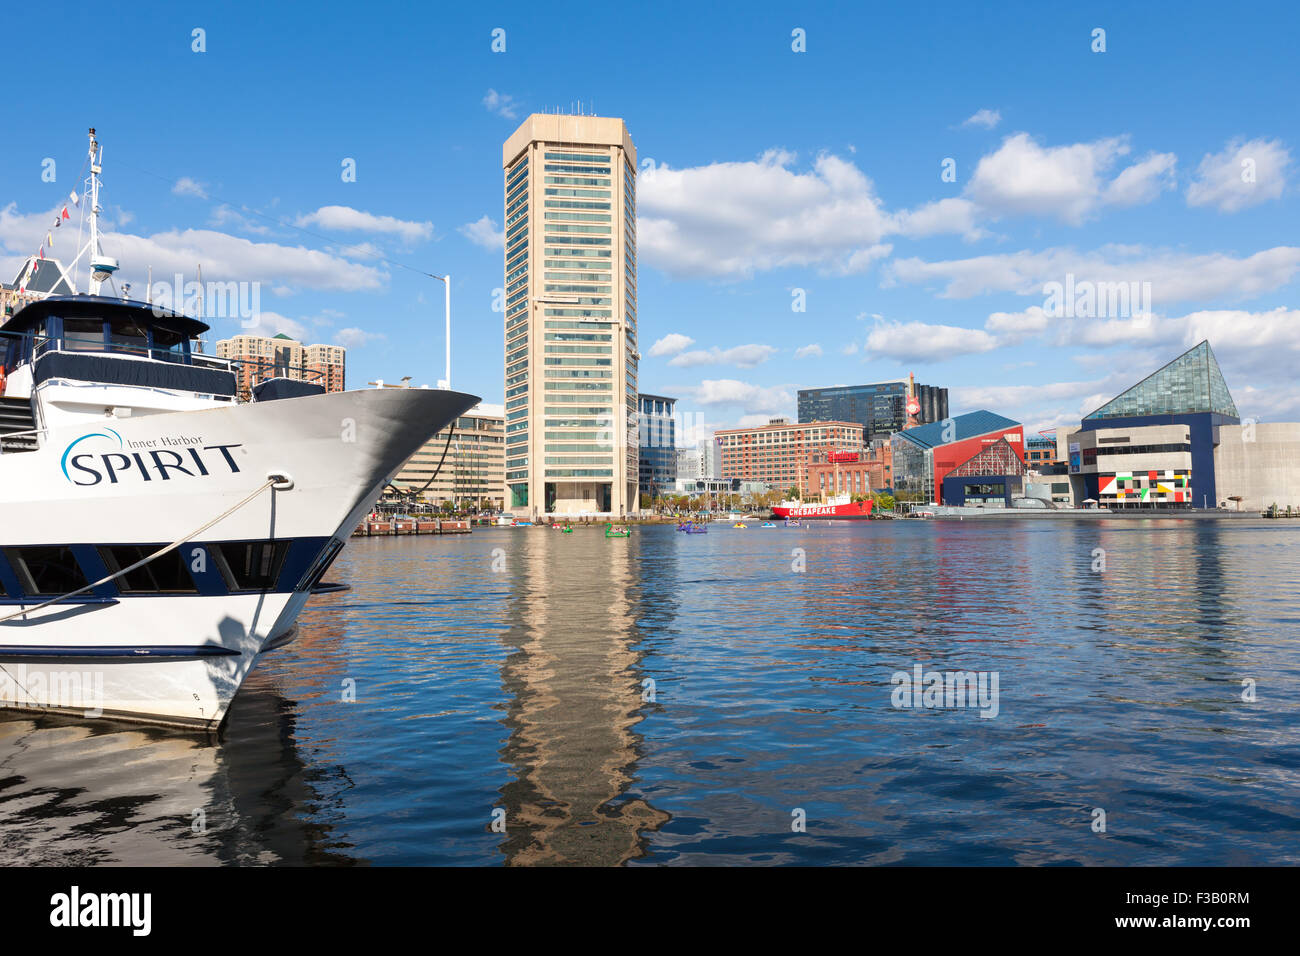 Vue d'un bateau Croisières Spirit et le port intérieur de Baltimore, Maryland. Banque D'Images